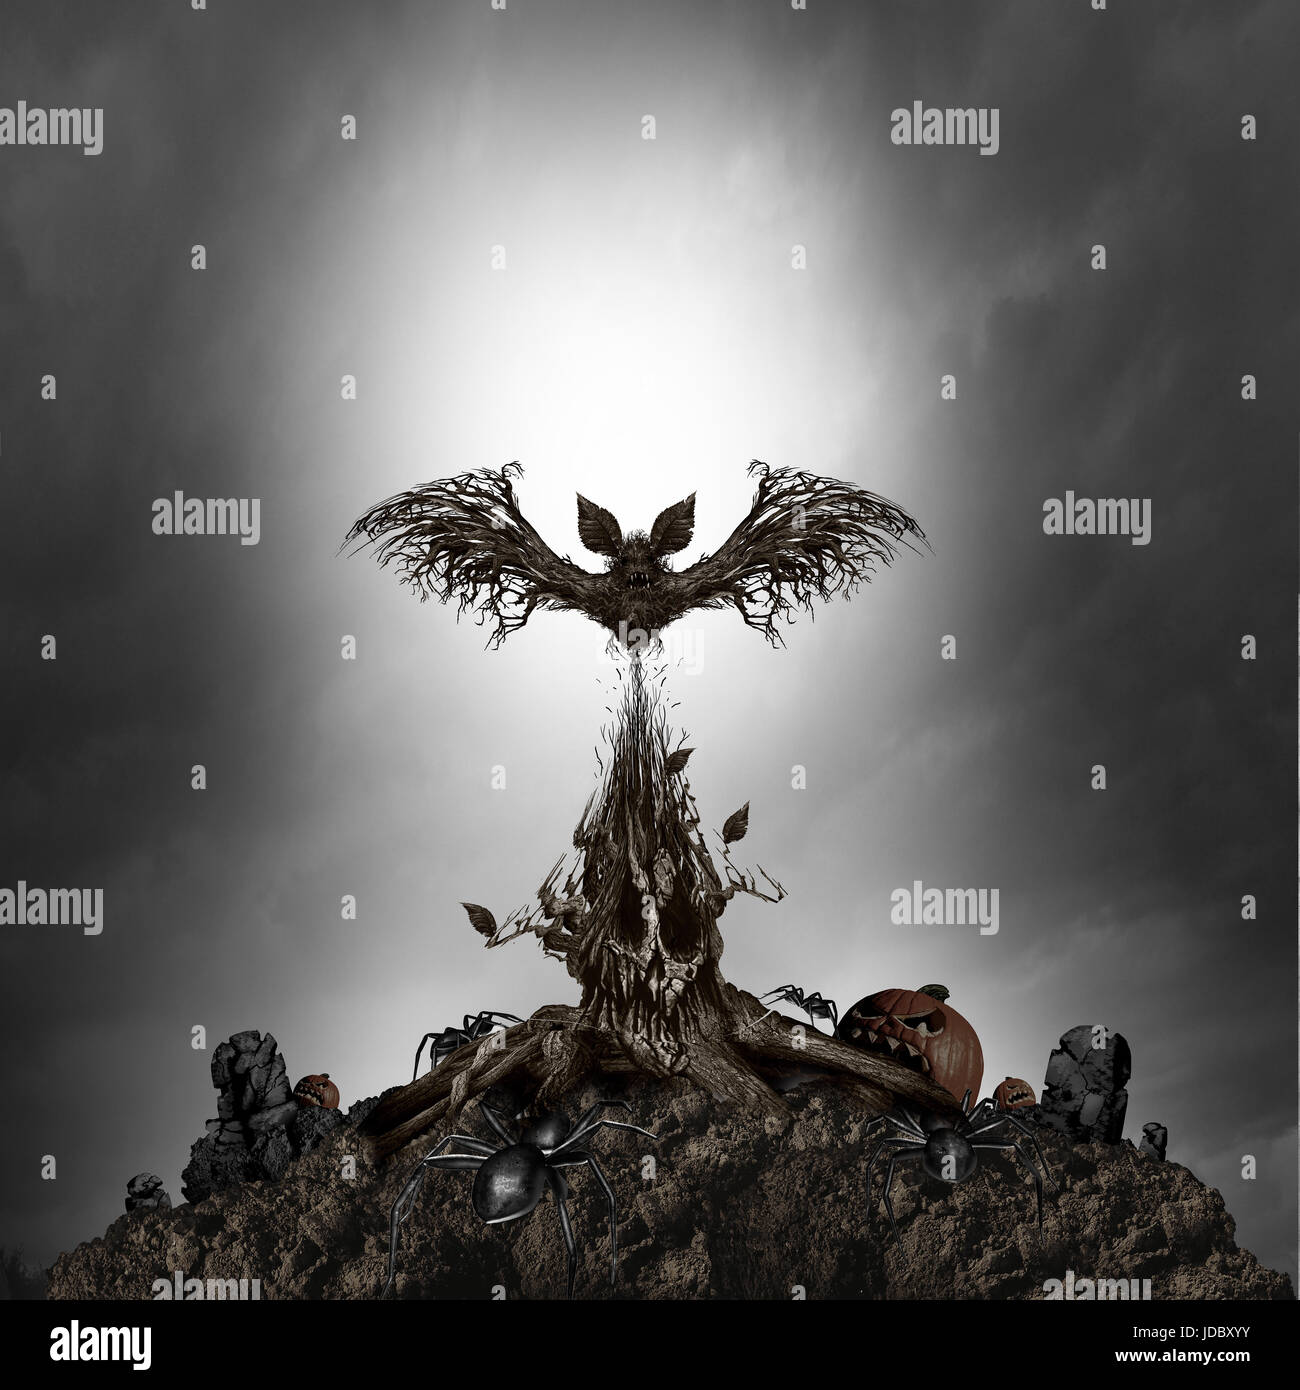 Furchterregender Baum-Monster-Konzept als gruselig dunklen Nacht Horror Szene mit einem lebenden mutierte Pflanze geformt wie eine böse Schädel und spukt Gespenst Fledermaus. Stockfoto